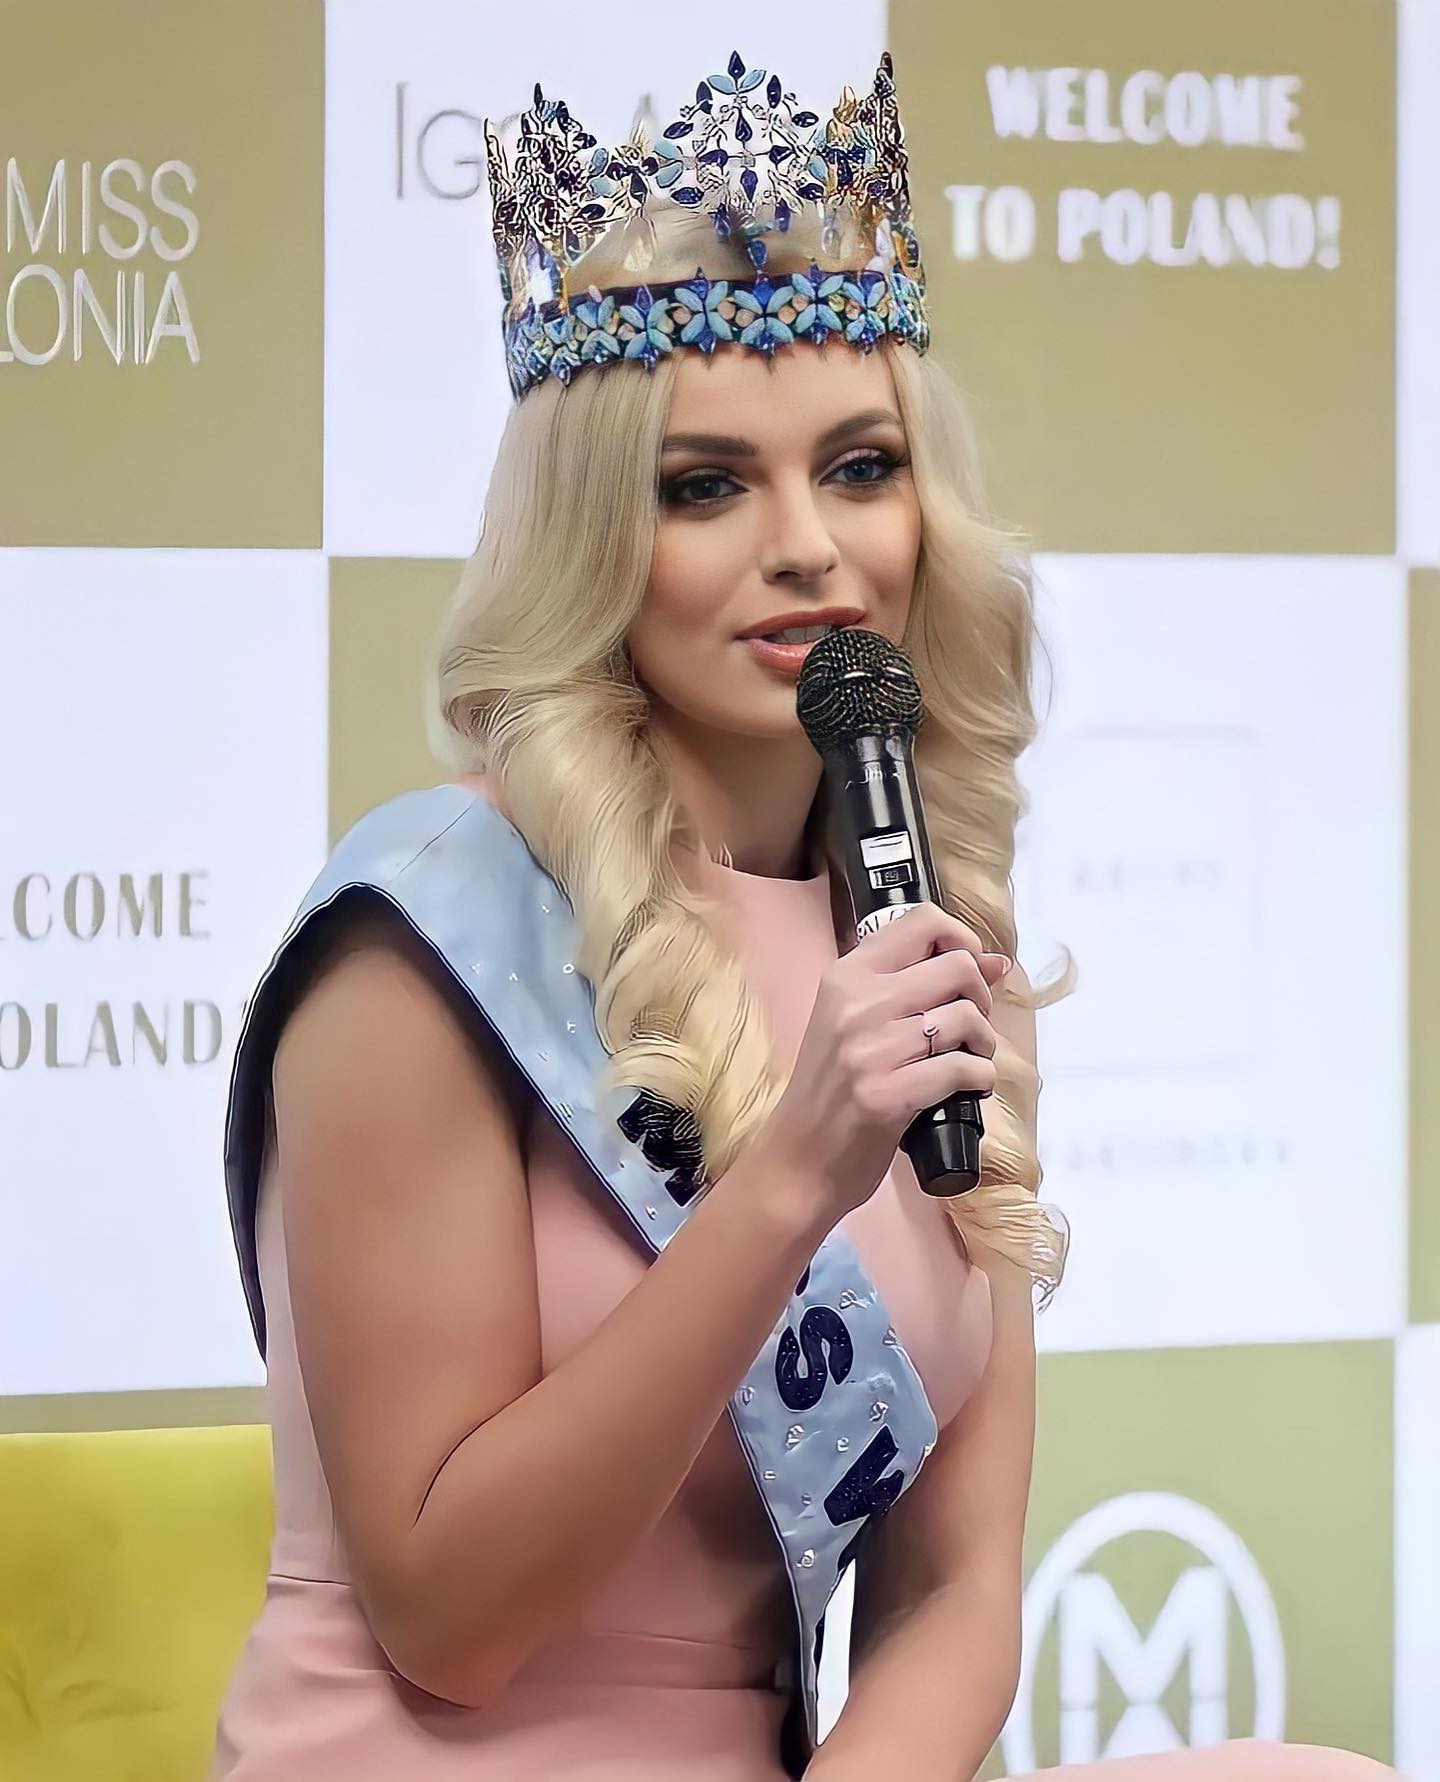 karolina bielawska, miss world 2021. - Página 7 27434315